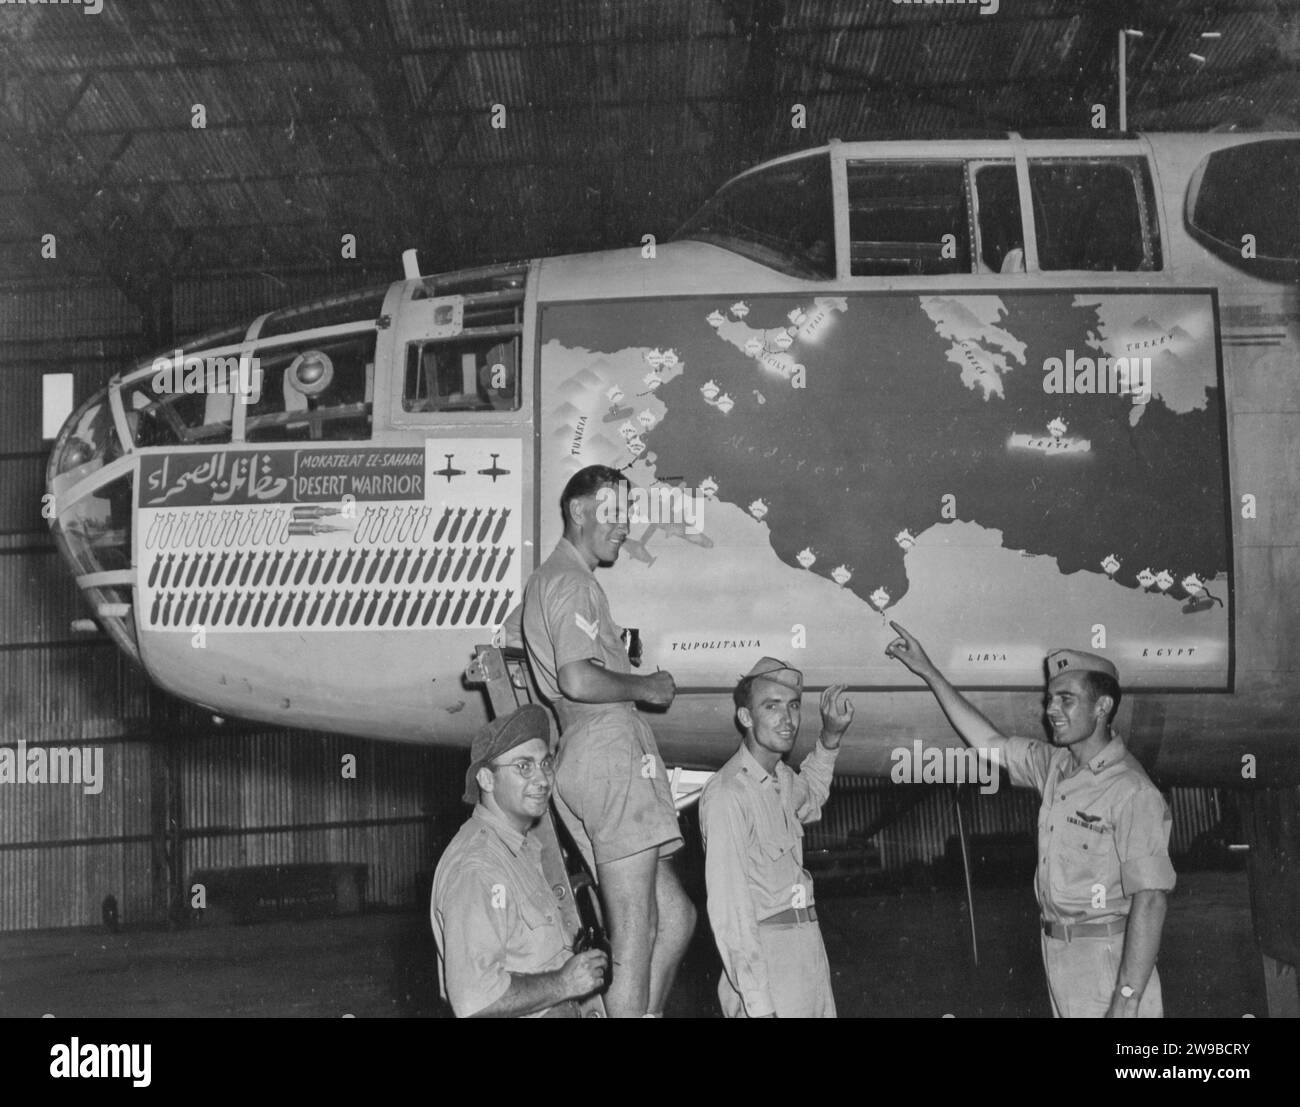 Le B-25 nord-américain, le «GUERRIER DU DÉSERT», est décoré en préparation d'être renvoyé aux États-Unis. Les bombes sur le capotage représentent les missions que cet avion a effectuées, depuis El Alamein jusqu'à la Sicile. Banque D'Images